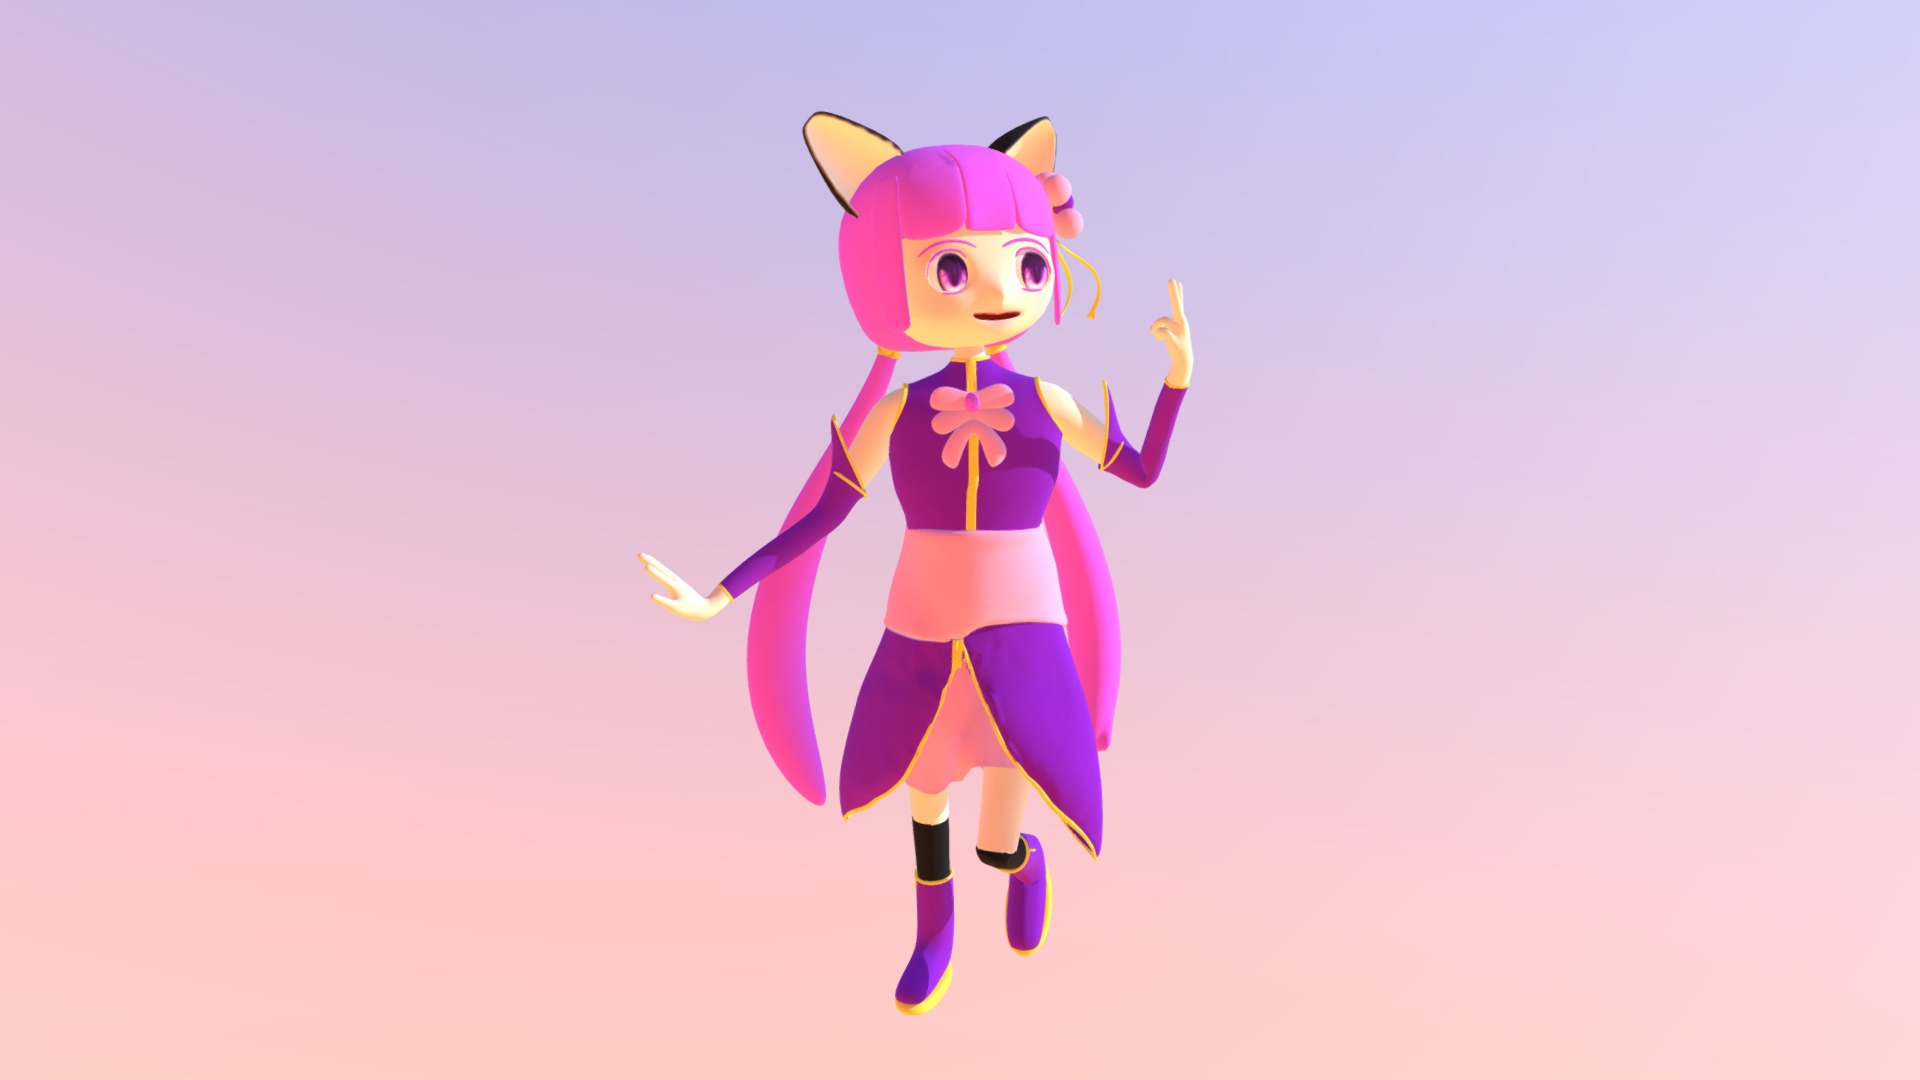 cat0 - 3D model by Minaiya [04d1be0] - Sketchfab